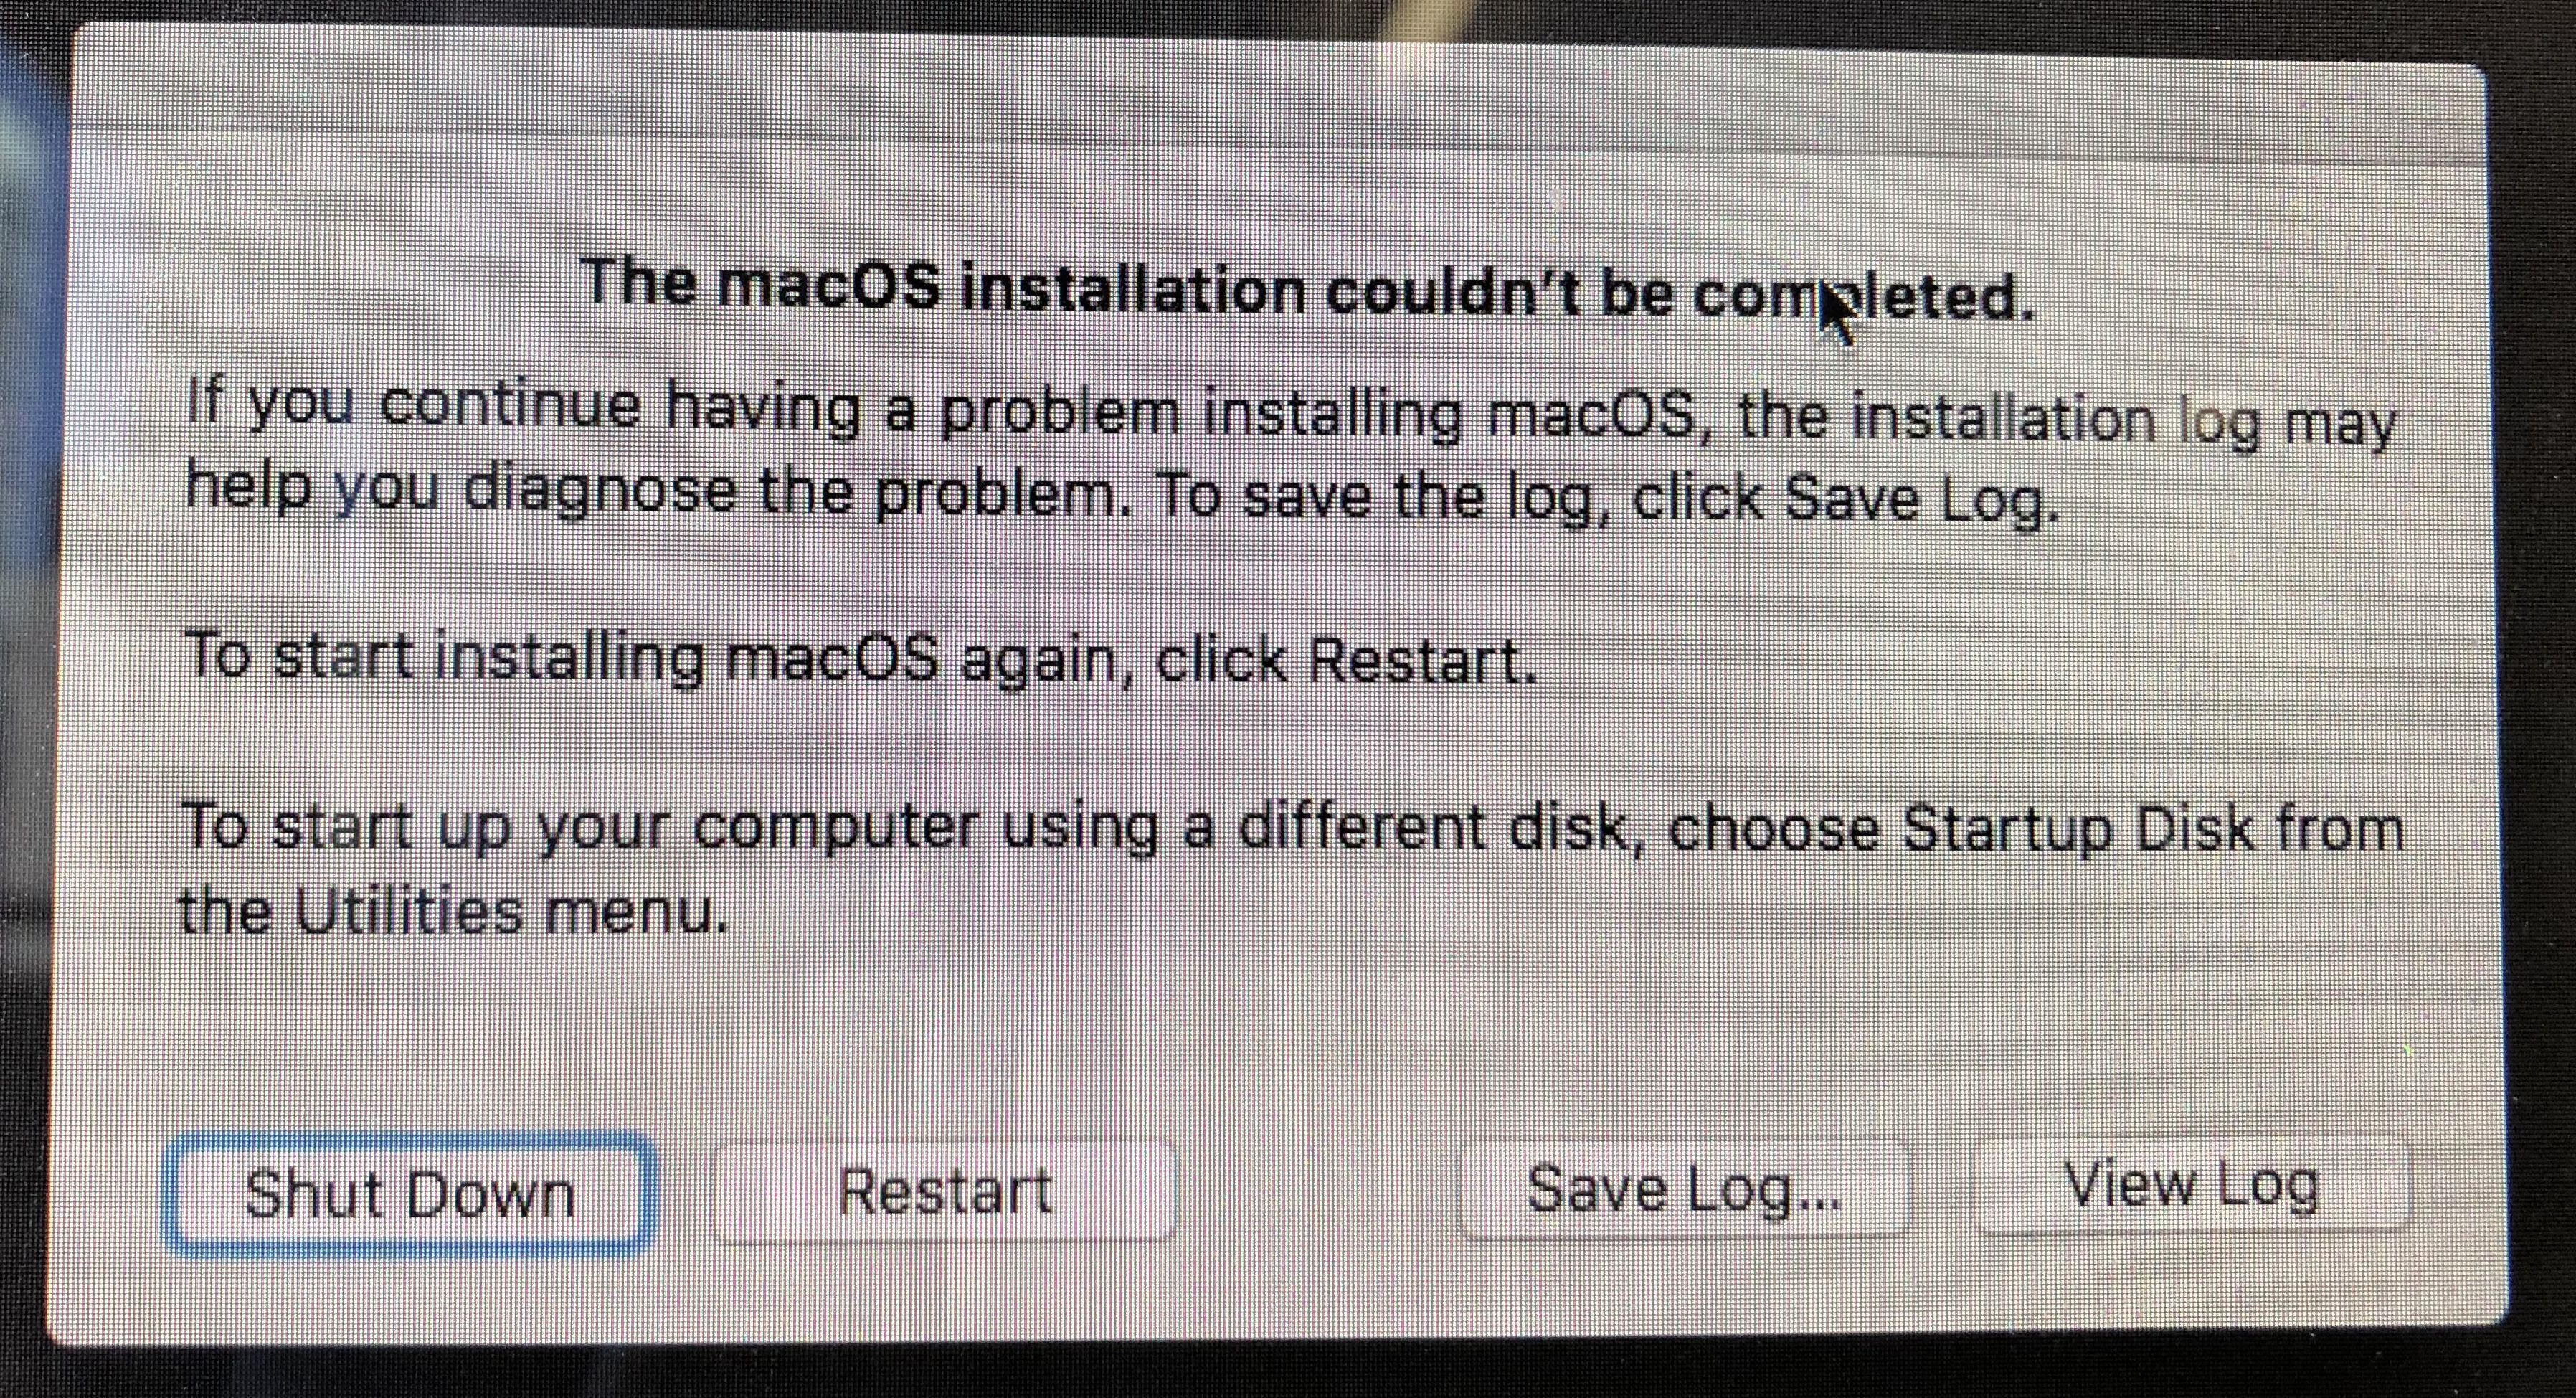 установка MacOS не может быть завершена